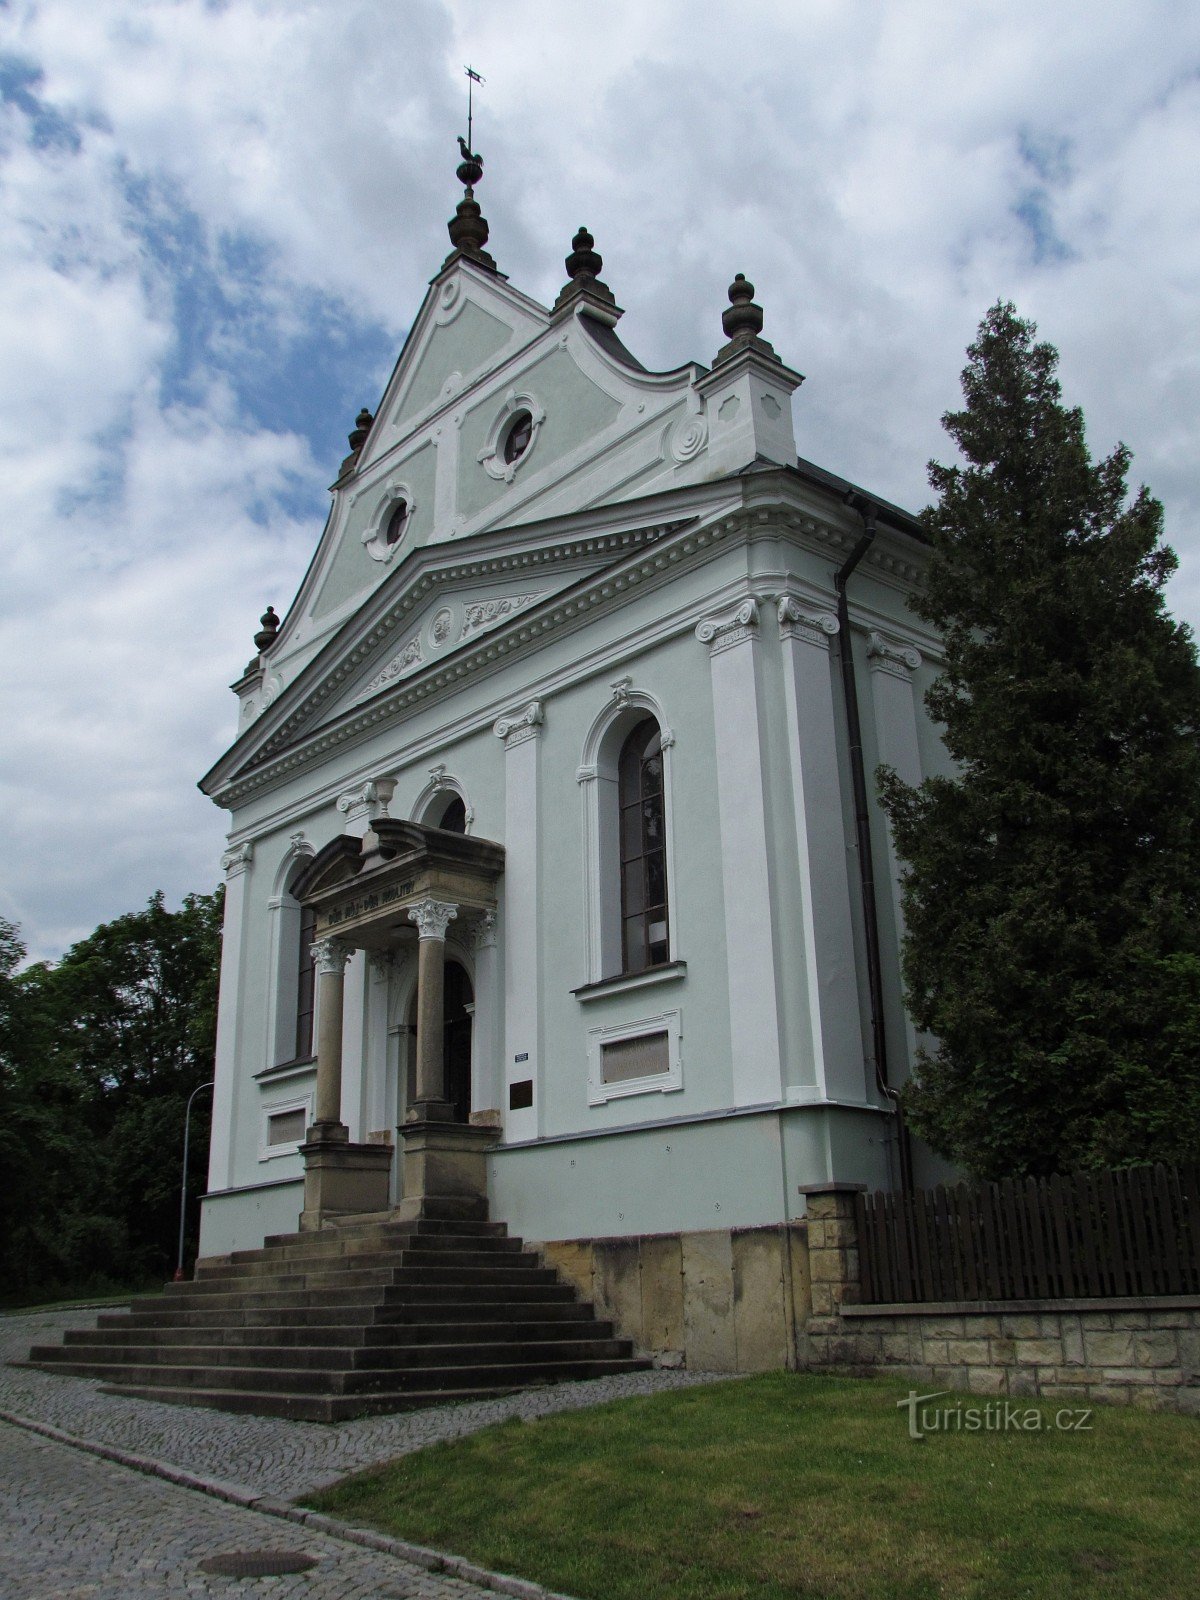 Vsetín - nhà thờ truyền giáo của Giáo đoàn Thượng (Helvetic)